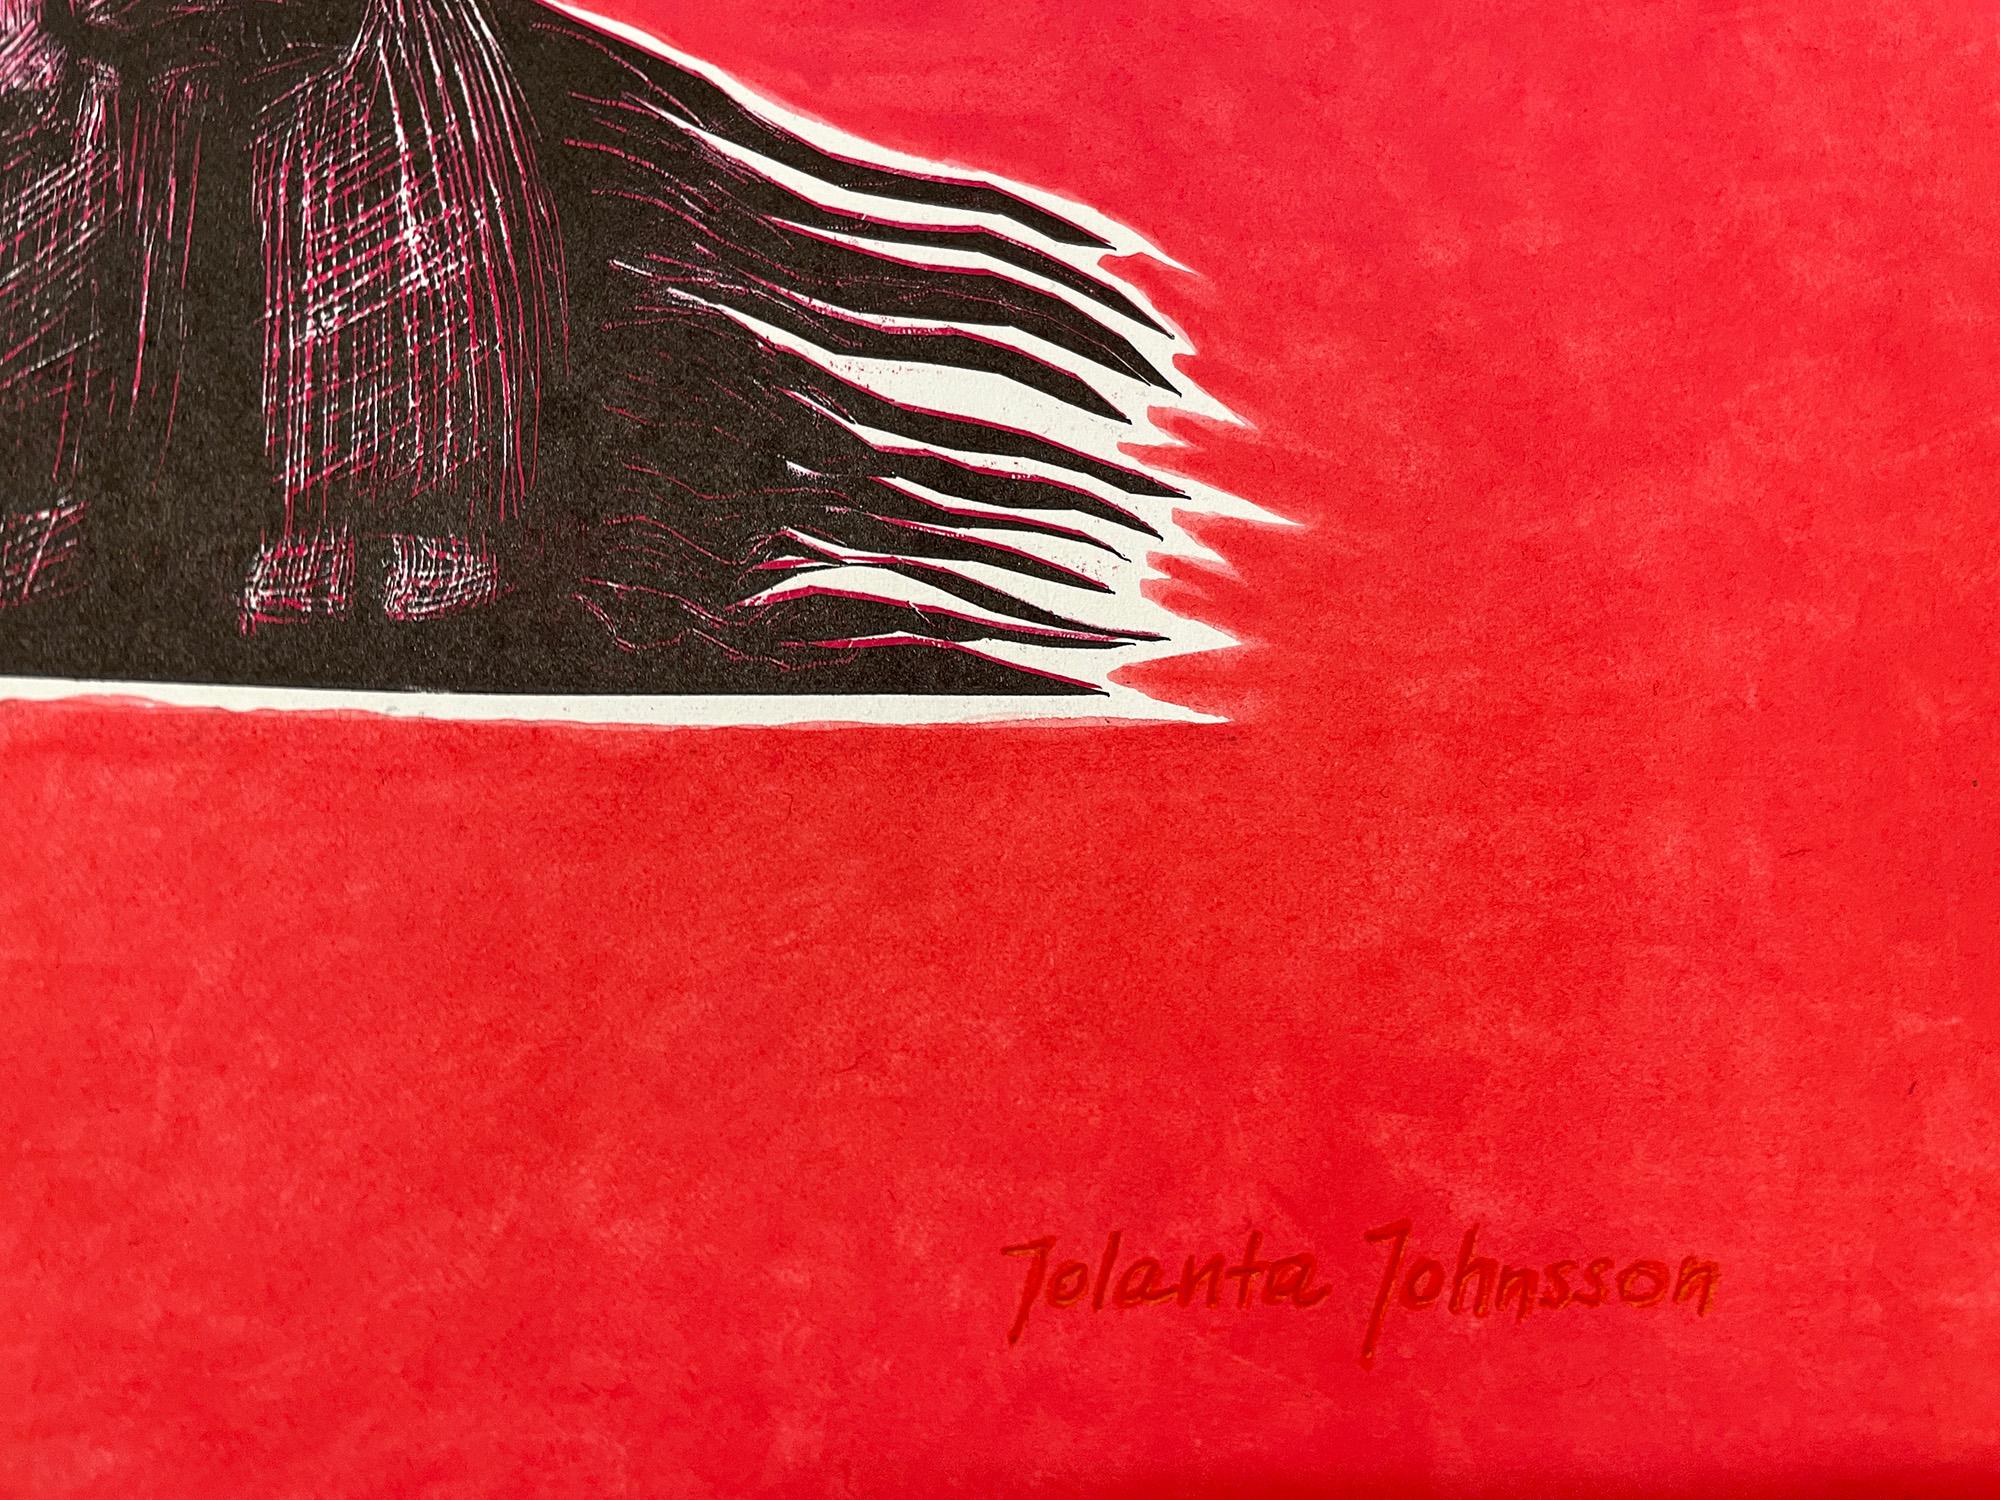 Desire in Rot – Art von Jolanta Johnsson